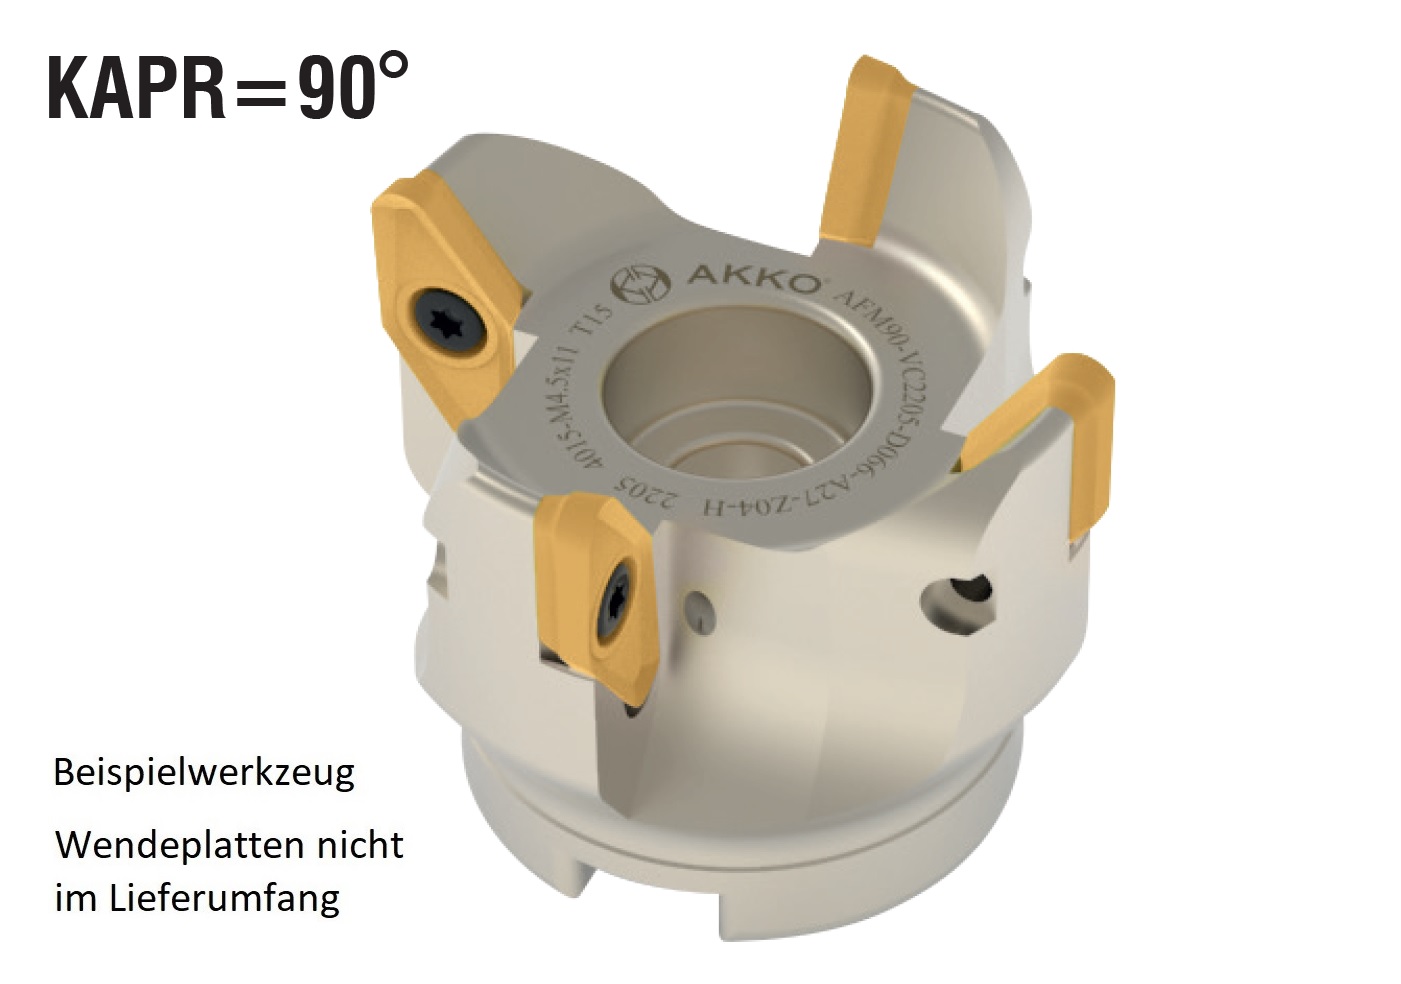 AKKO-Eckmesserkopf ø 63 mm, 90° Anstellwinkel, kompatibel mit ISO VCKT 2205..
Aufnahmebohrung ø 22 mm (Typ A), mit Innenkühlung, Z=4